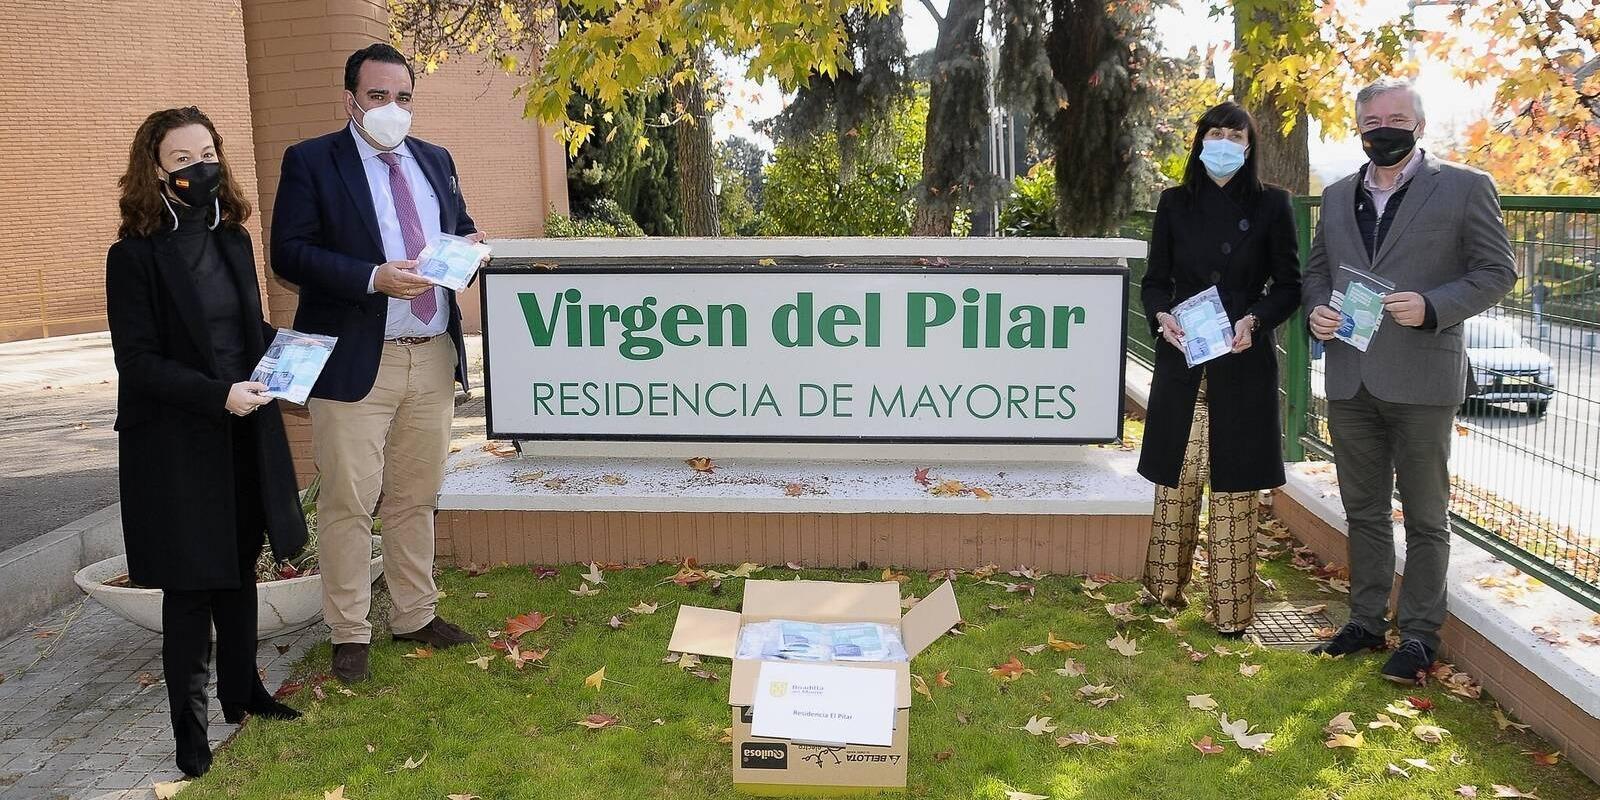 El Ayuntamiento de Boadilla reparte mascarillas quirúrgicas a todos los vecinos que viven en las residencias del municipio